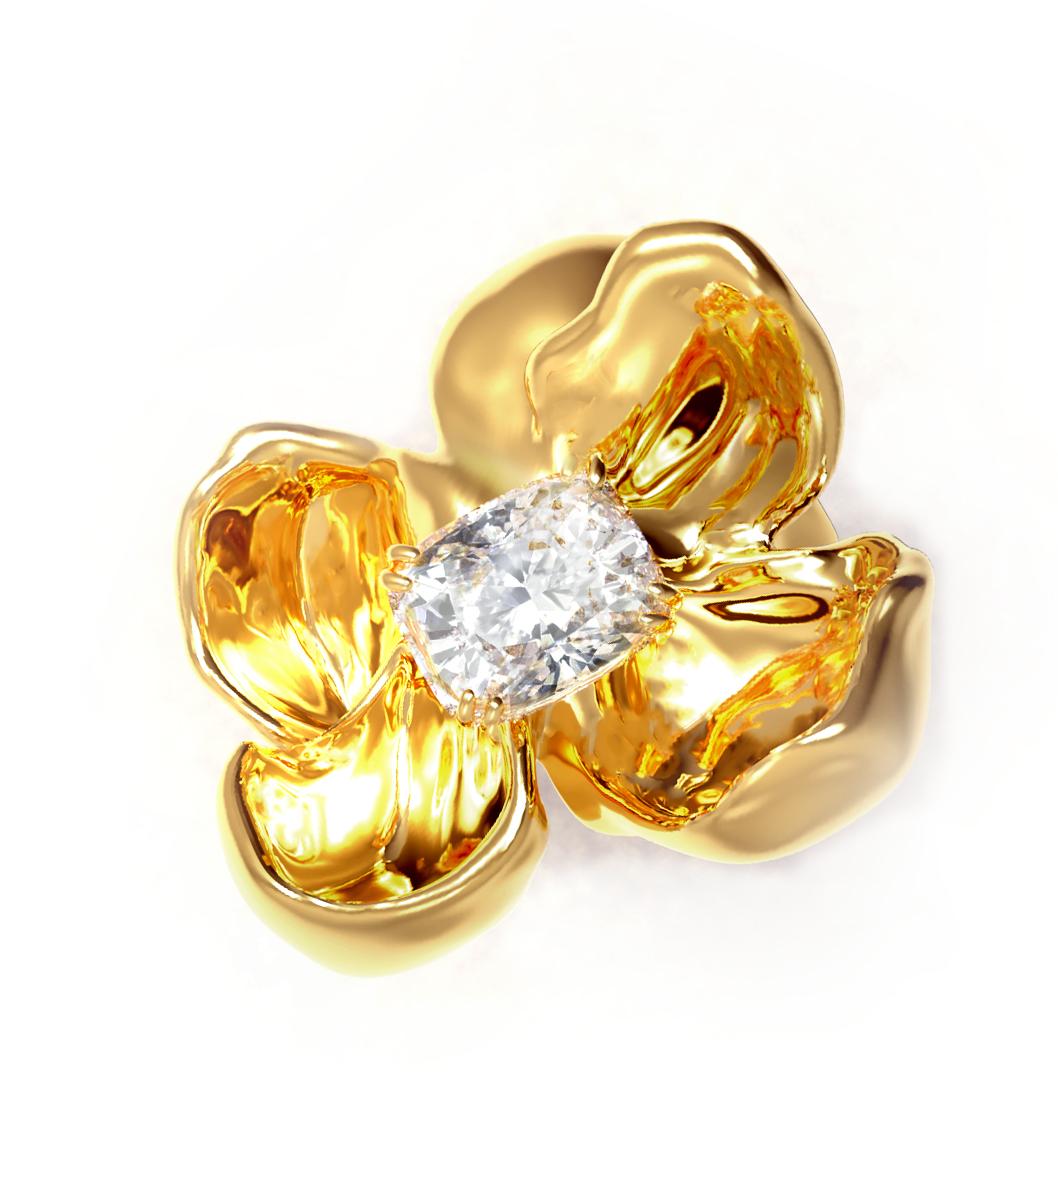 2.4 carat diamond ring price